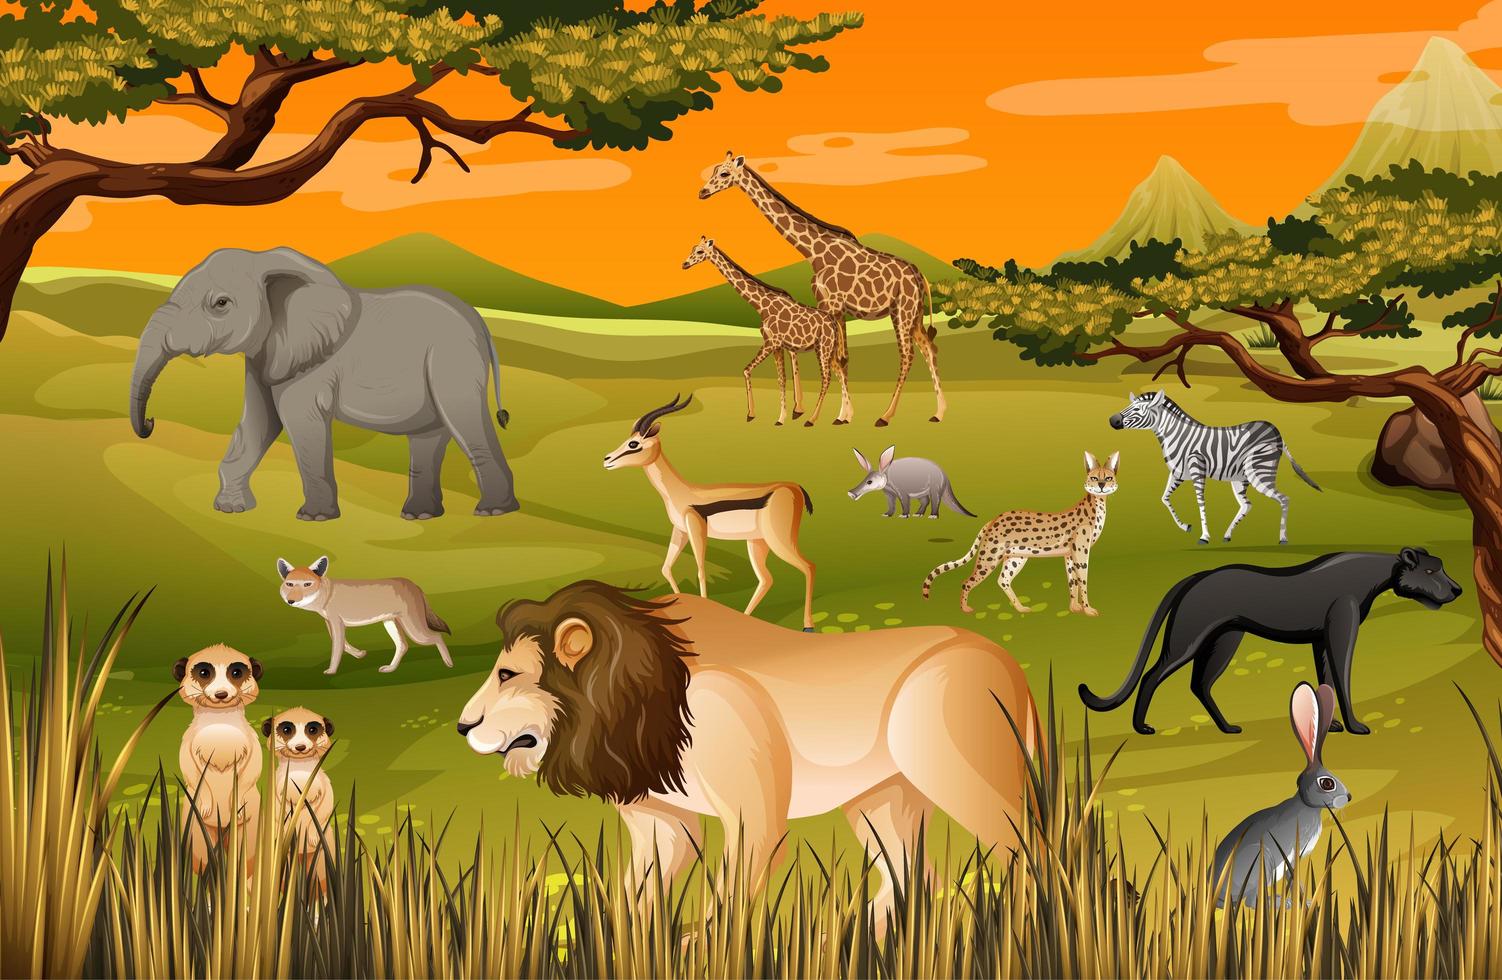 grupp av vilda afrikanska djur i skogen scen vektor